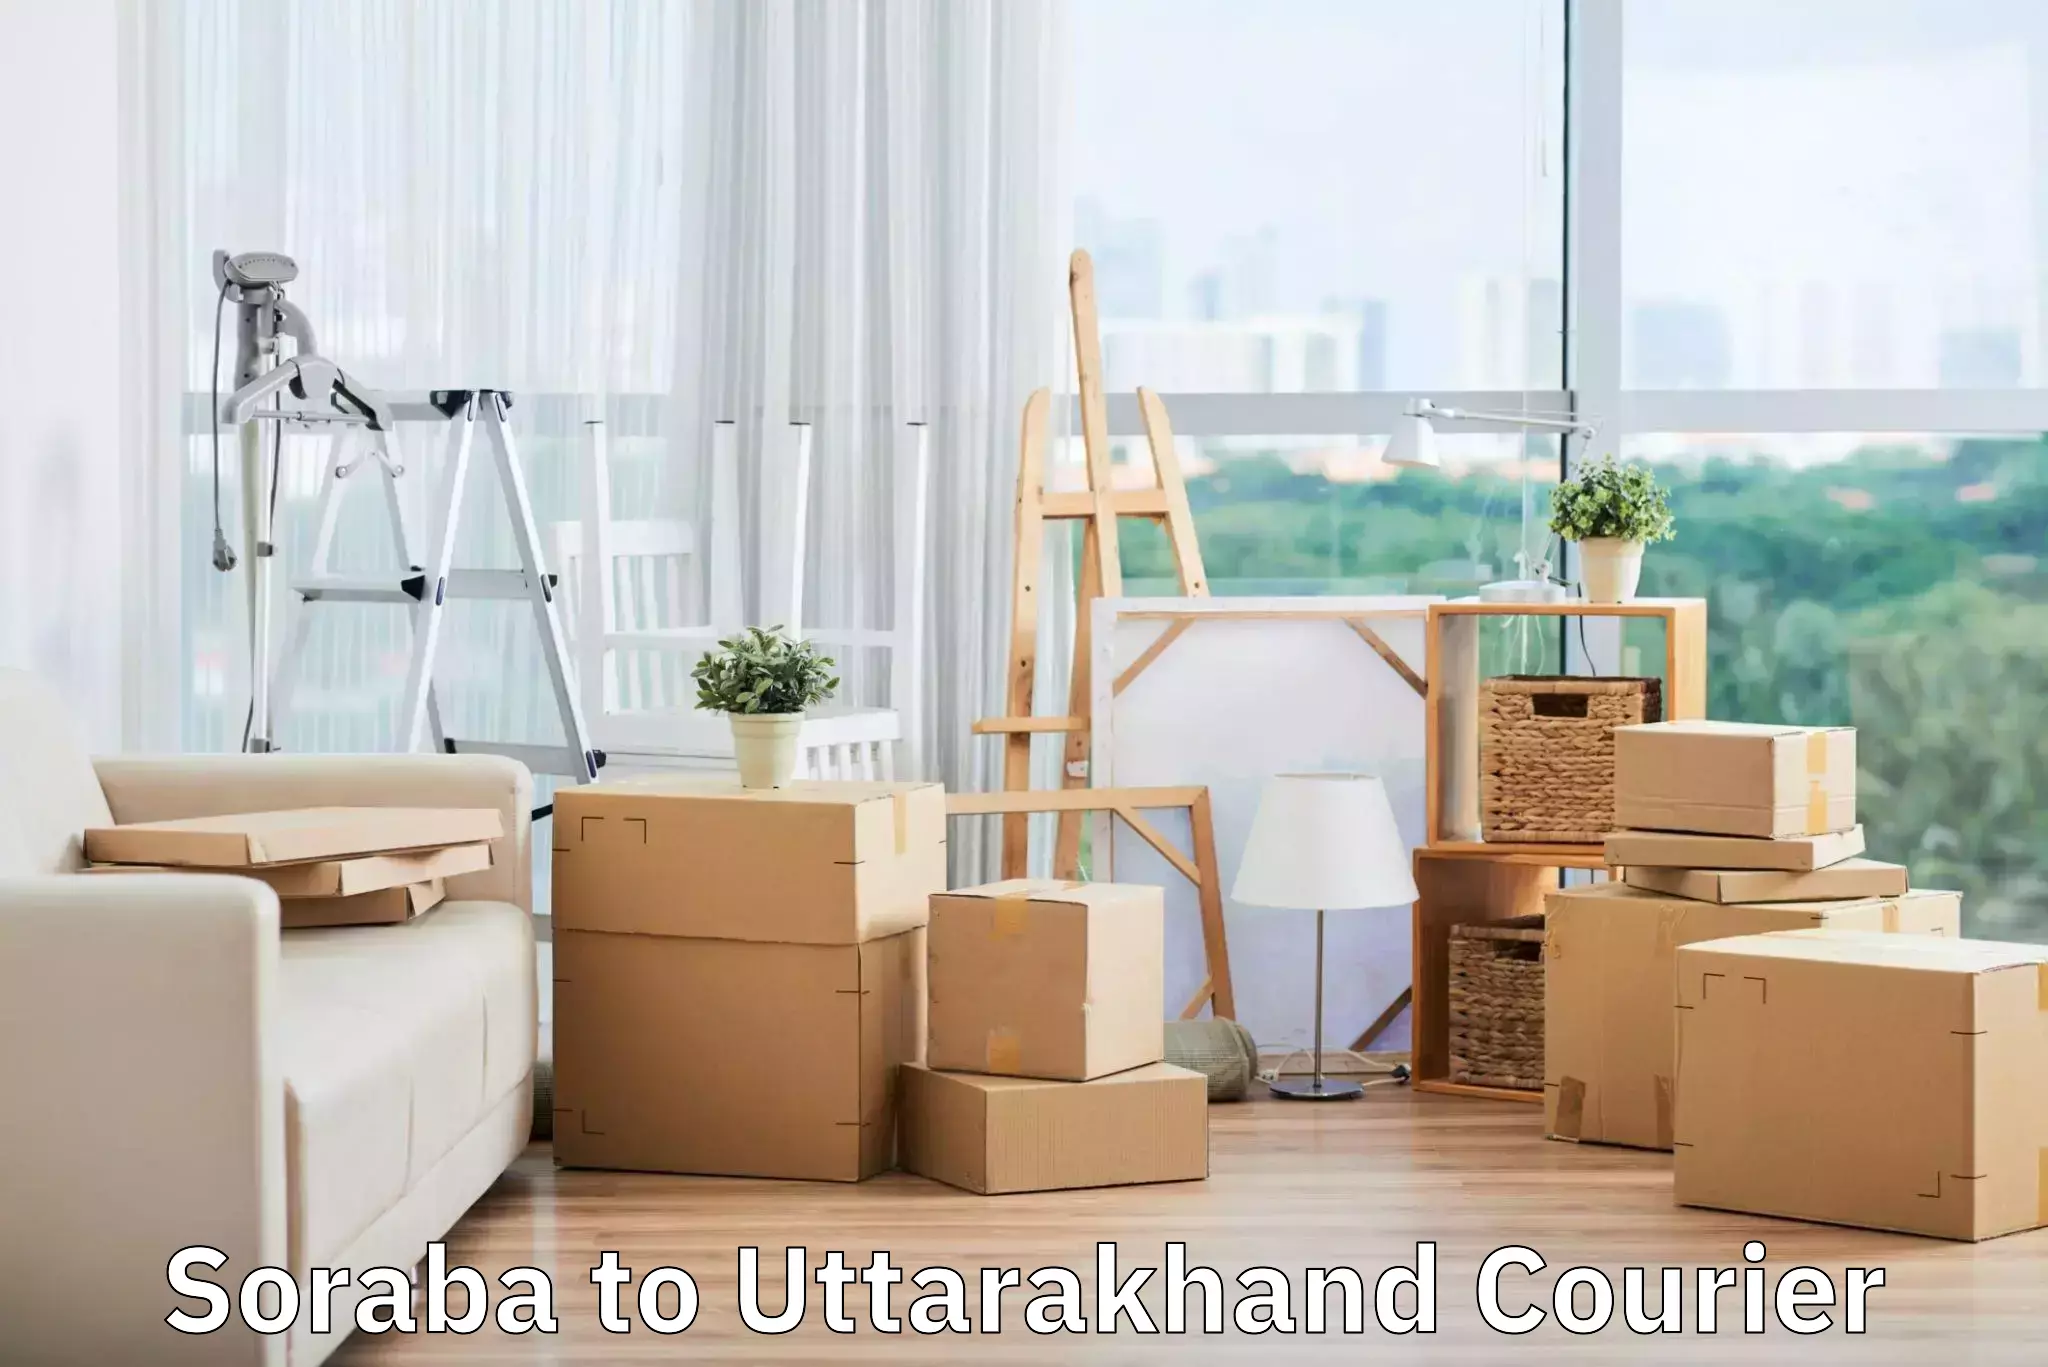 Suburban luggage delivery Soraba to Uttarakhand